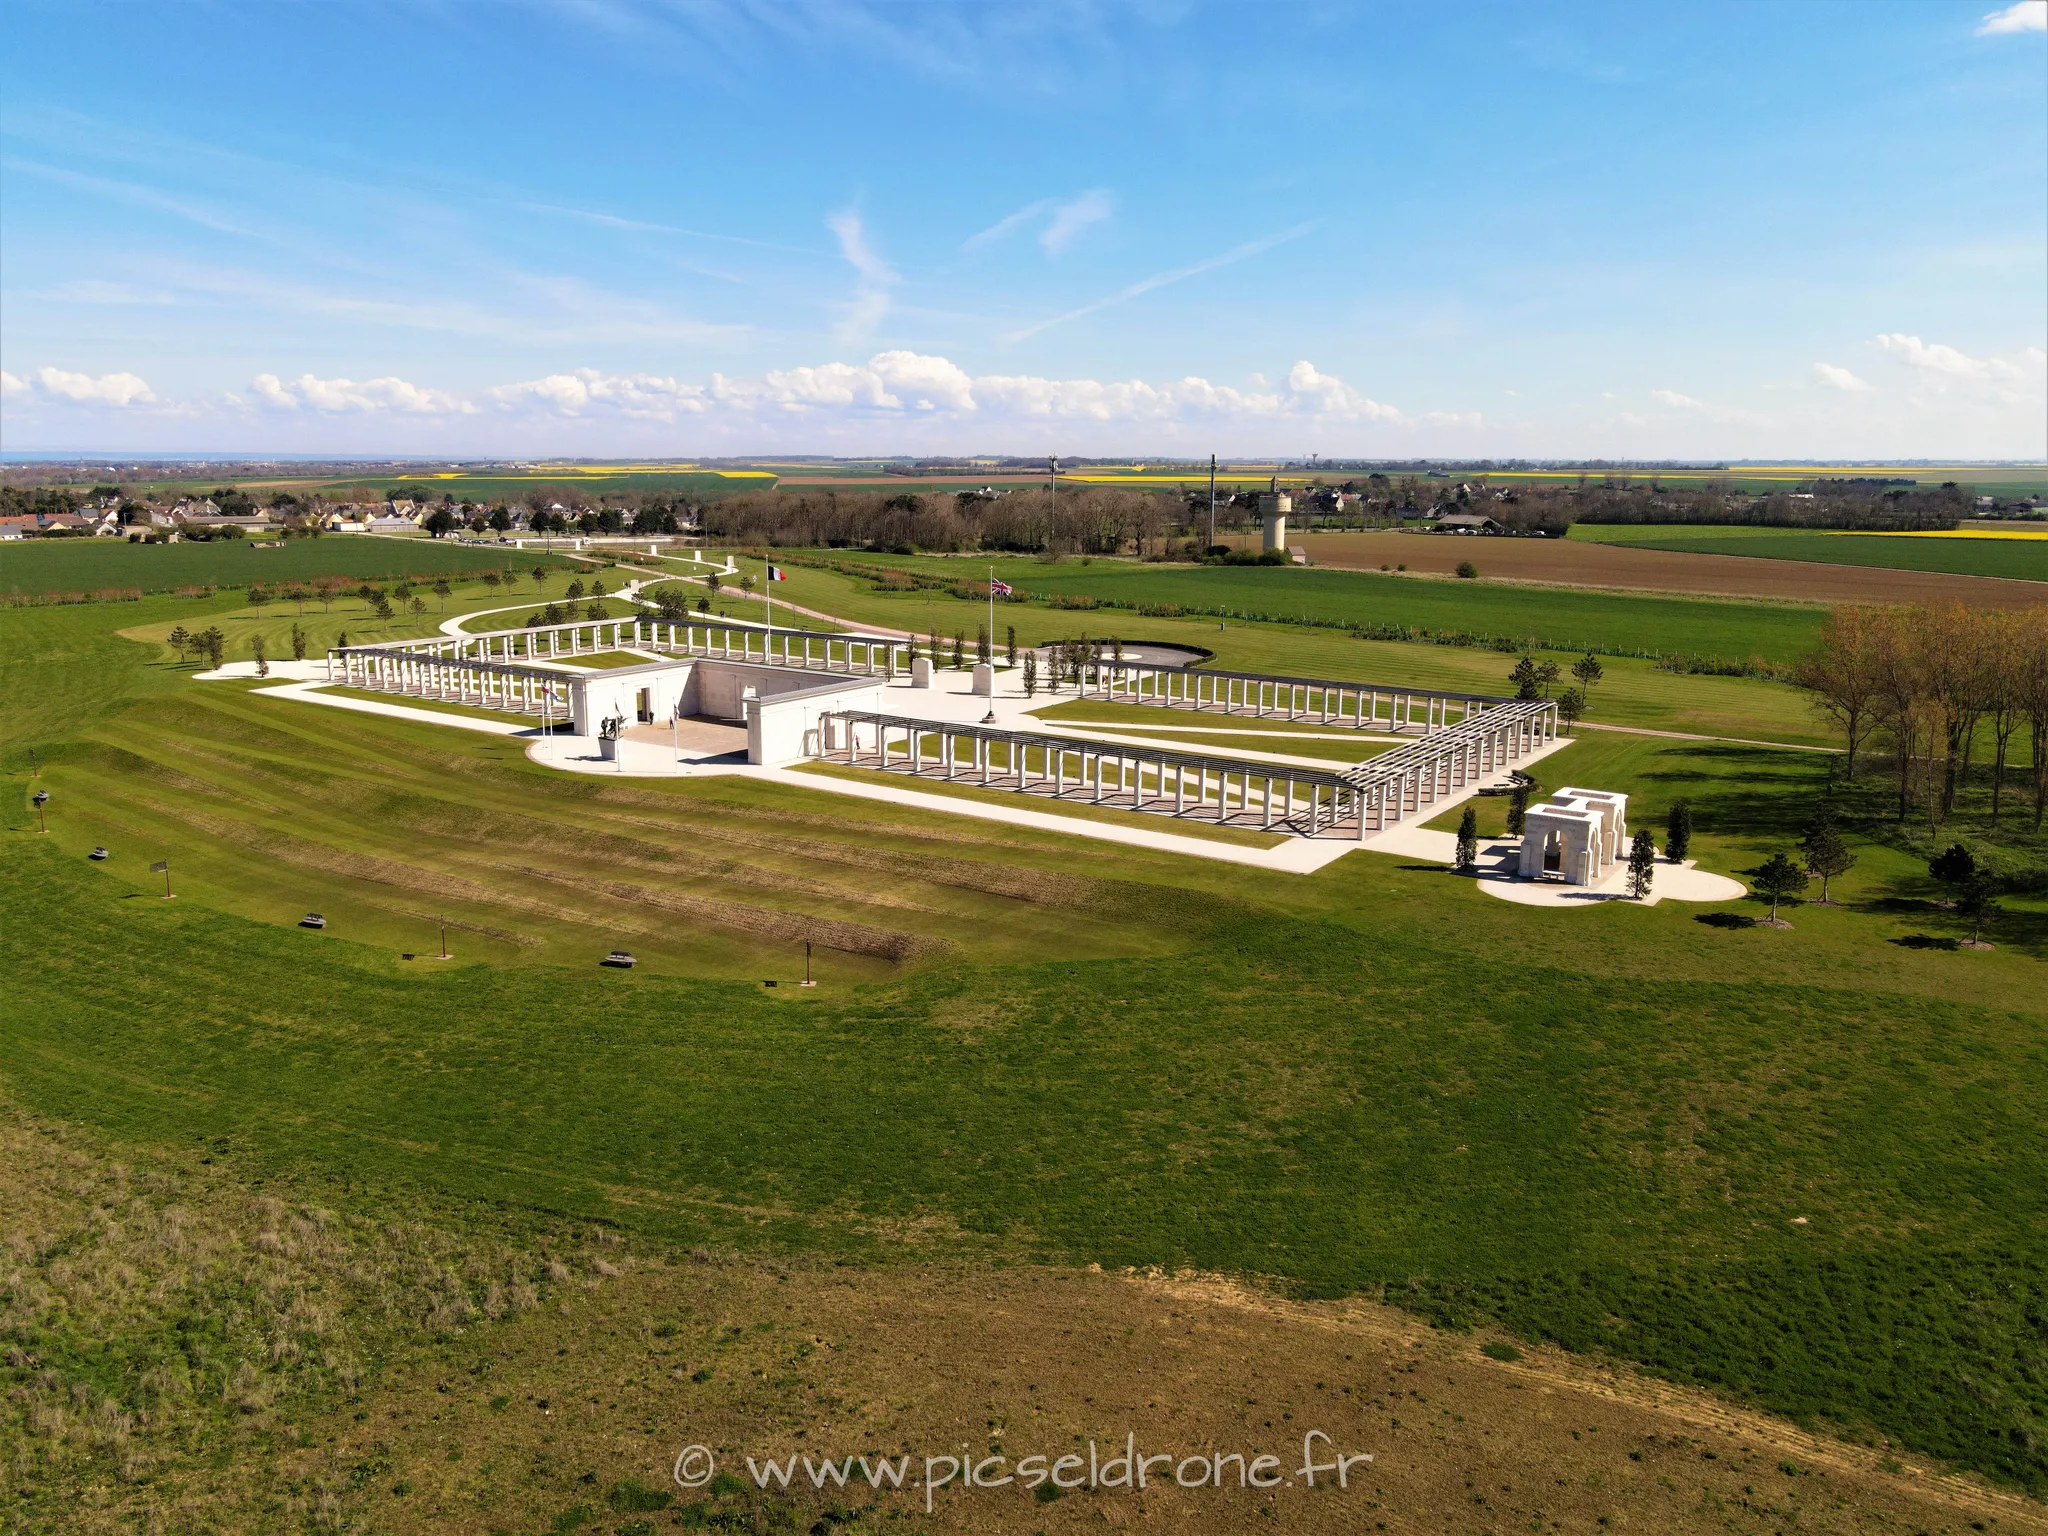 Prise de vue aérienne, photo aérienne du mémorial britannique de VER SUR MER, télépilote drone, pilote drone, PICSEL DRONE, CAEN